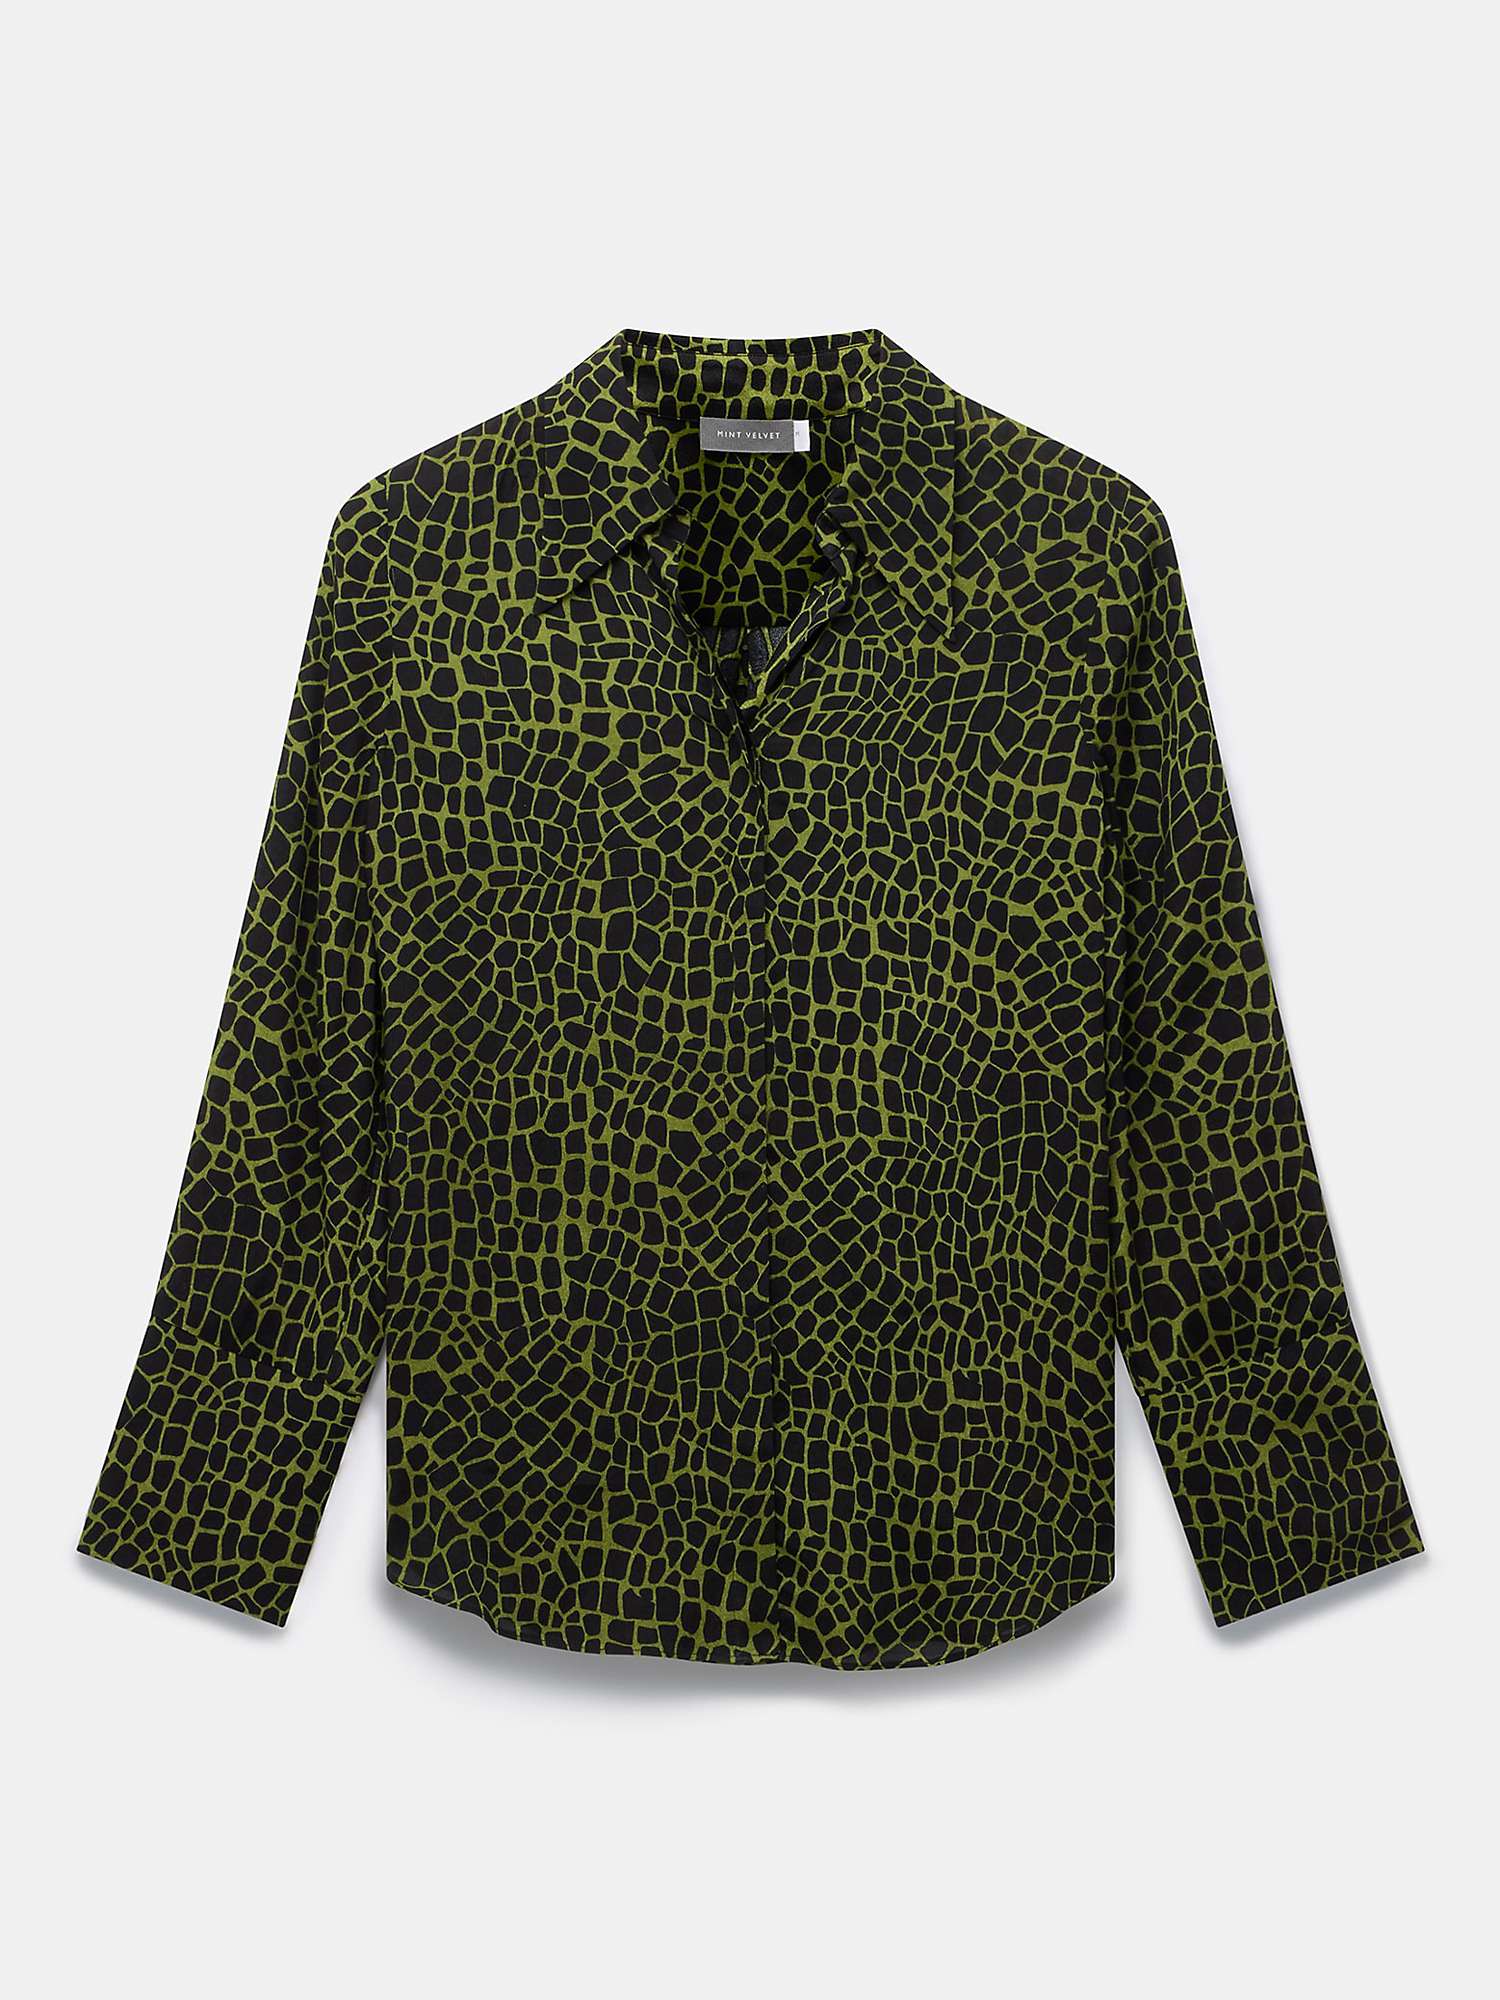 Buy Mint Velvet Abstract Print Shirt, Green/Black Online at johnlewis.com